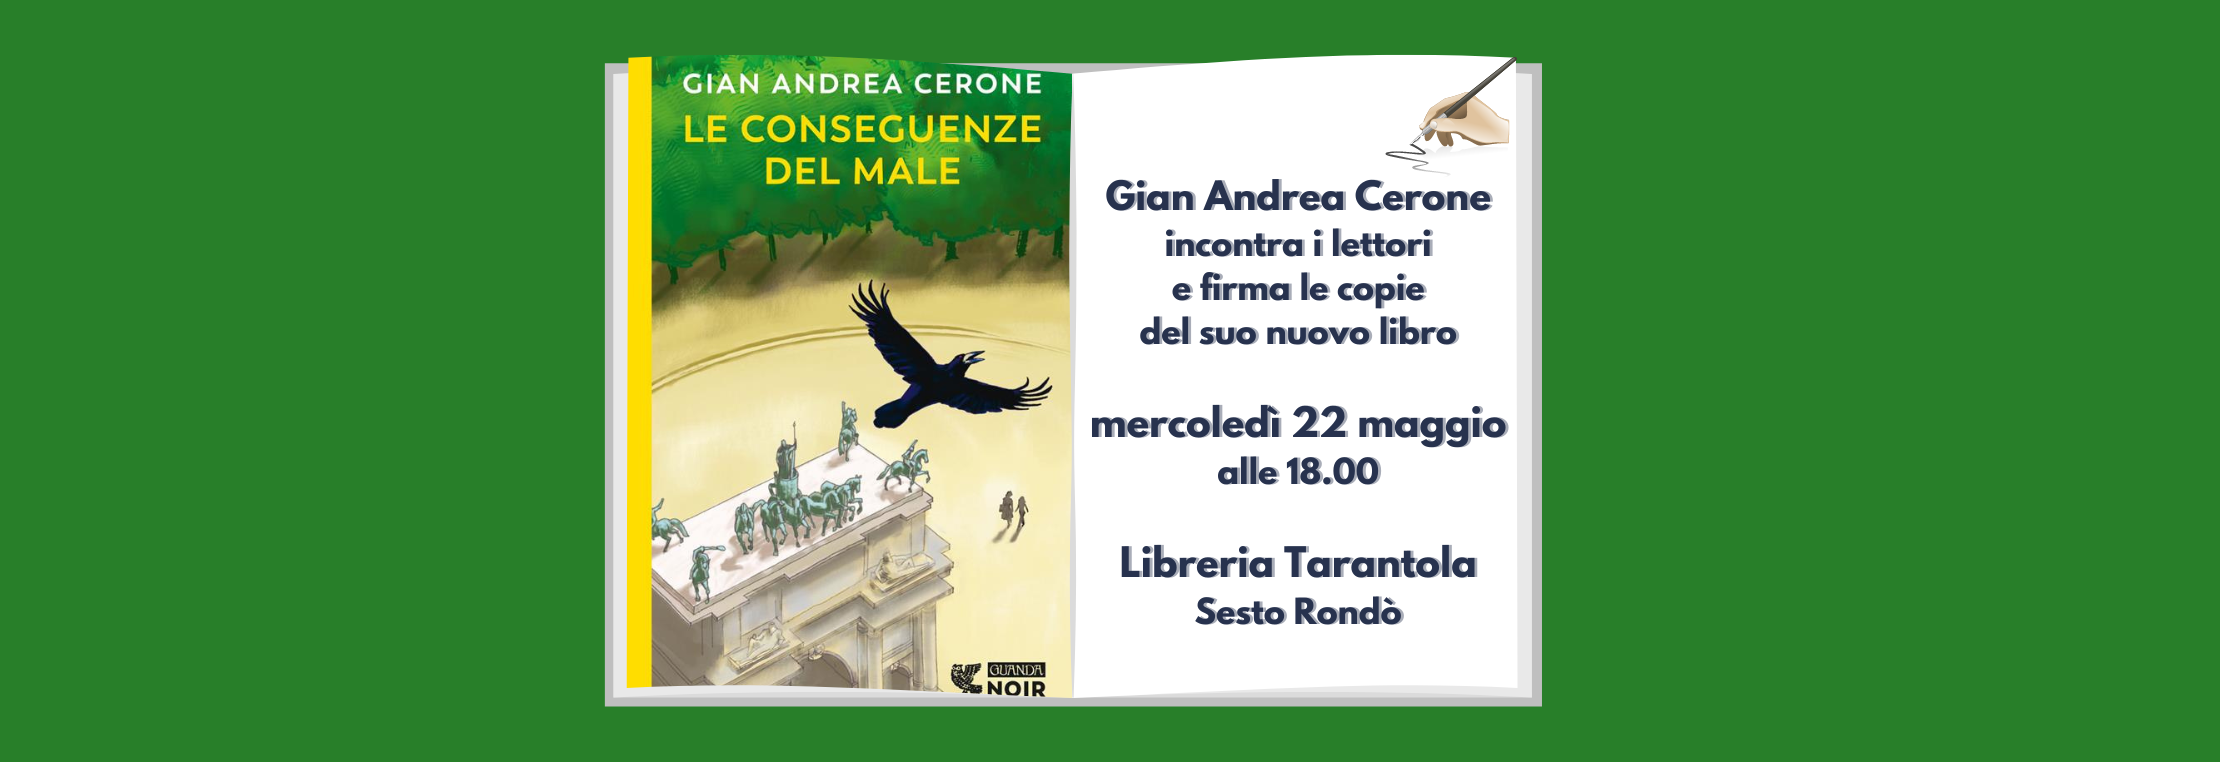 Gian Andrea Cerone incontra i lettori alla libreria Tarantola